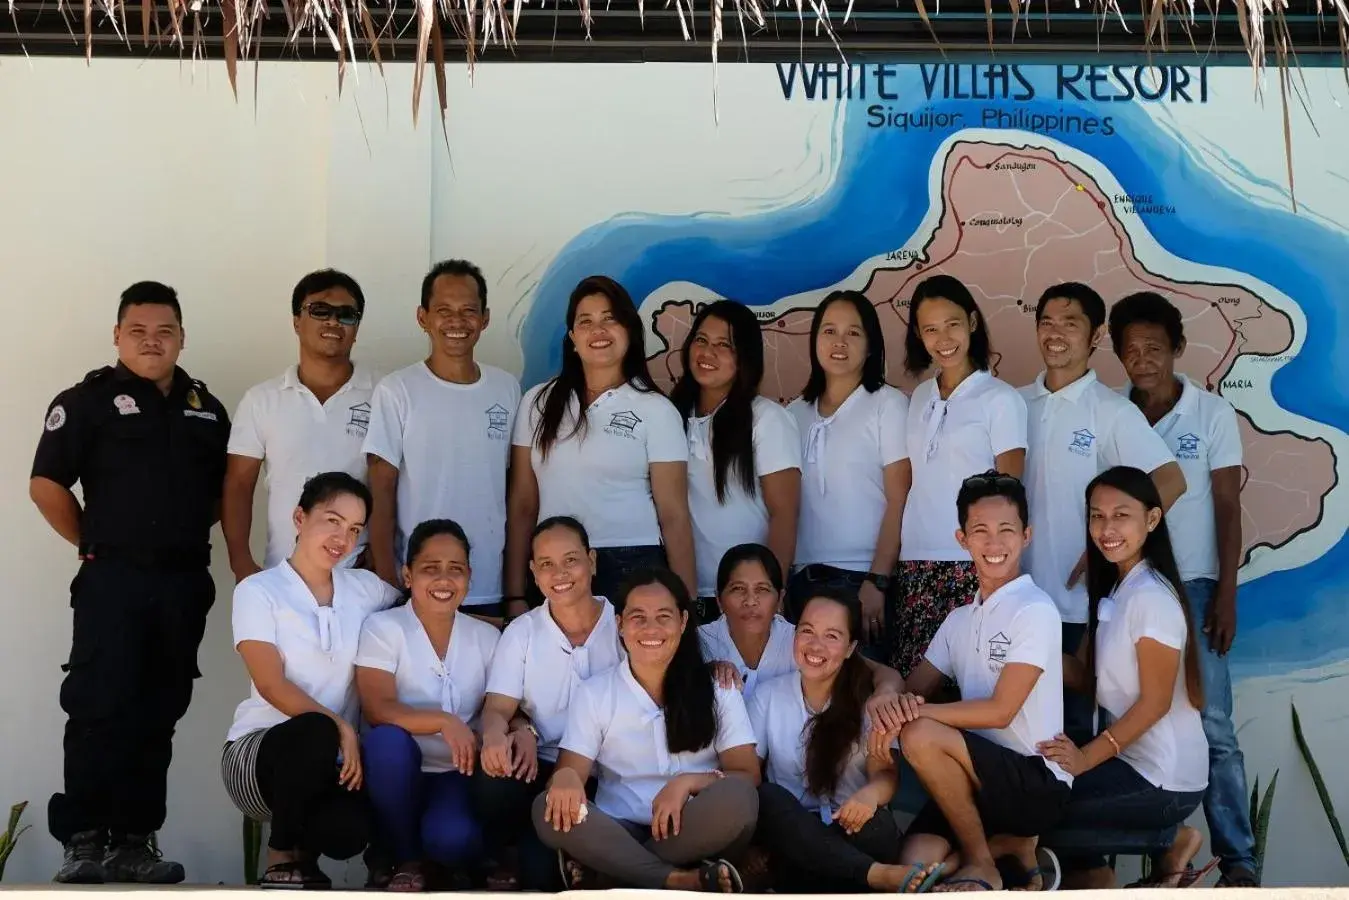 Staff in White Villas Resort